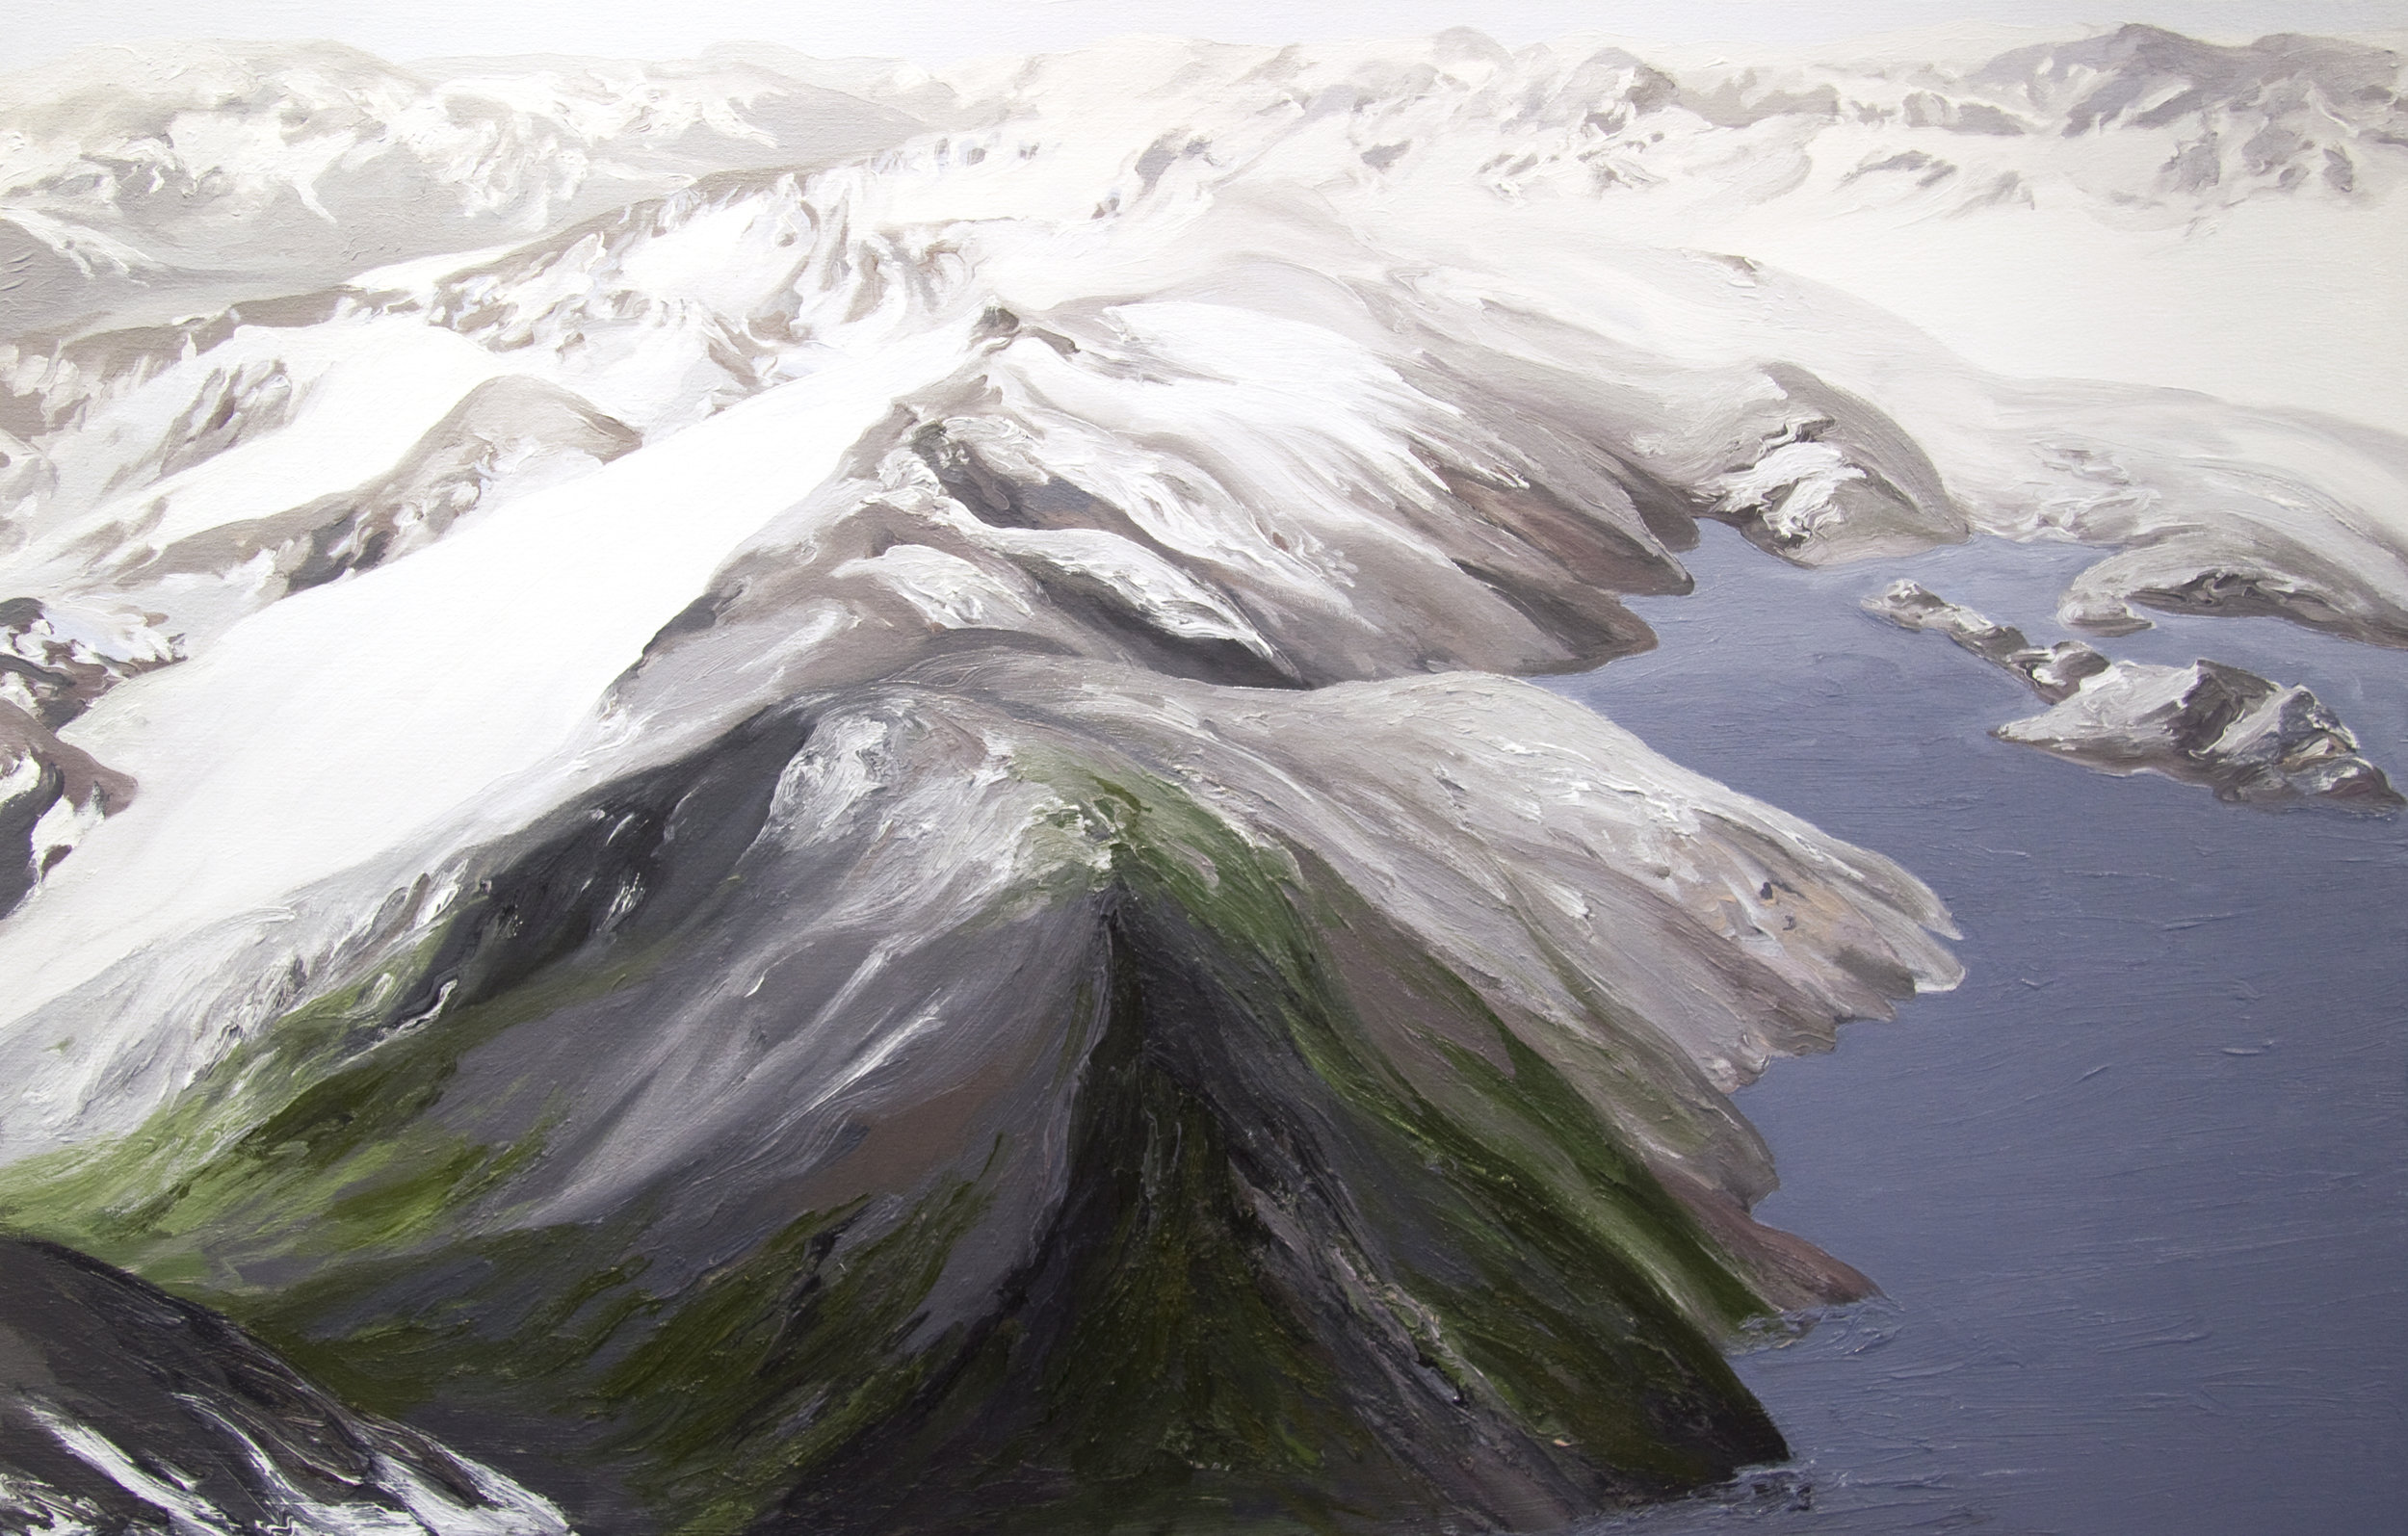 Tebenkof Glacier #2, 2004, after David Arnold